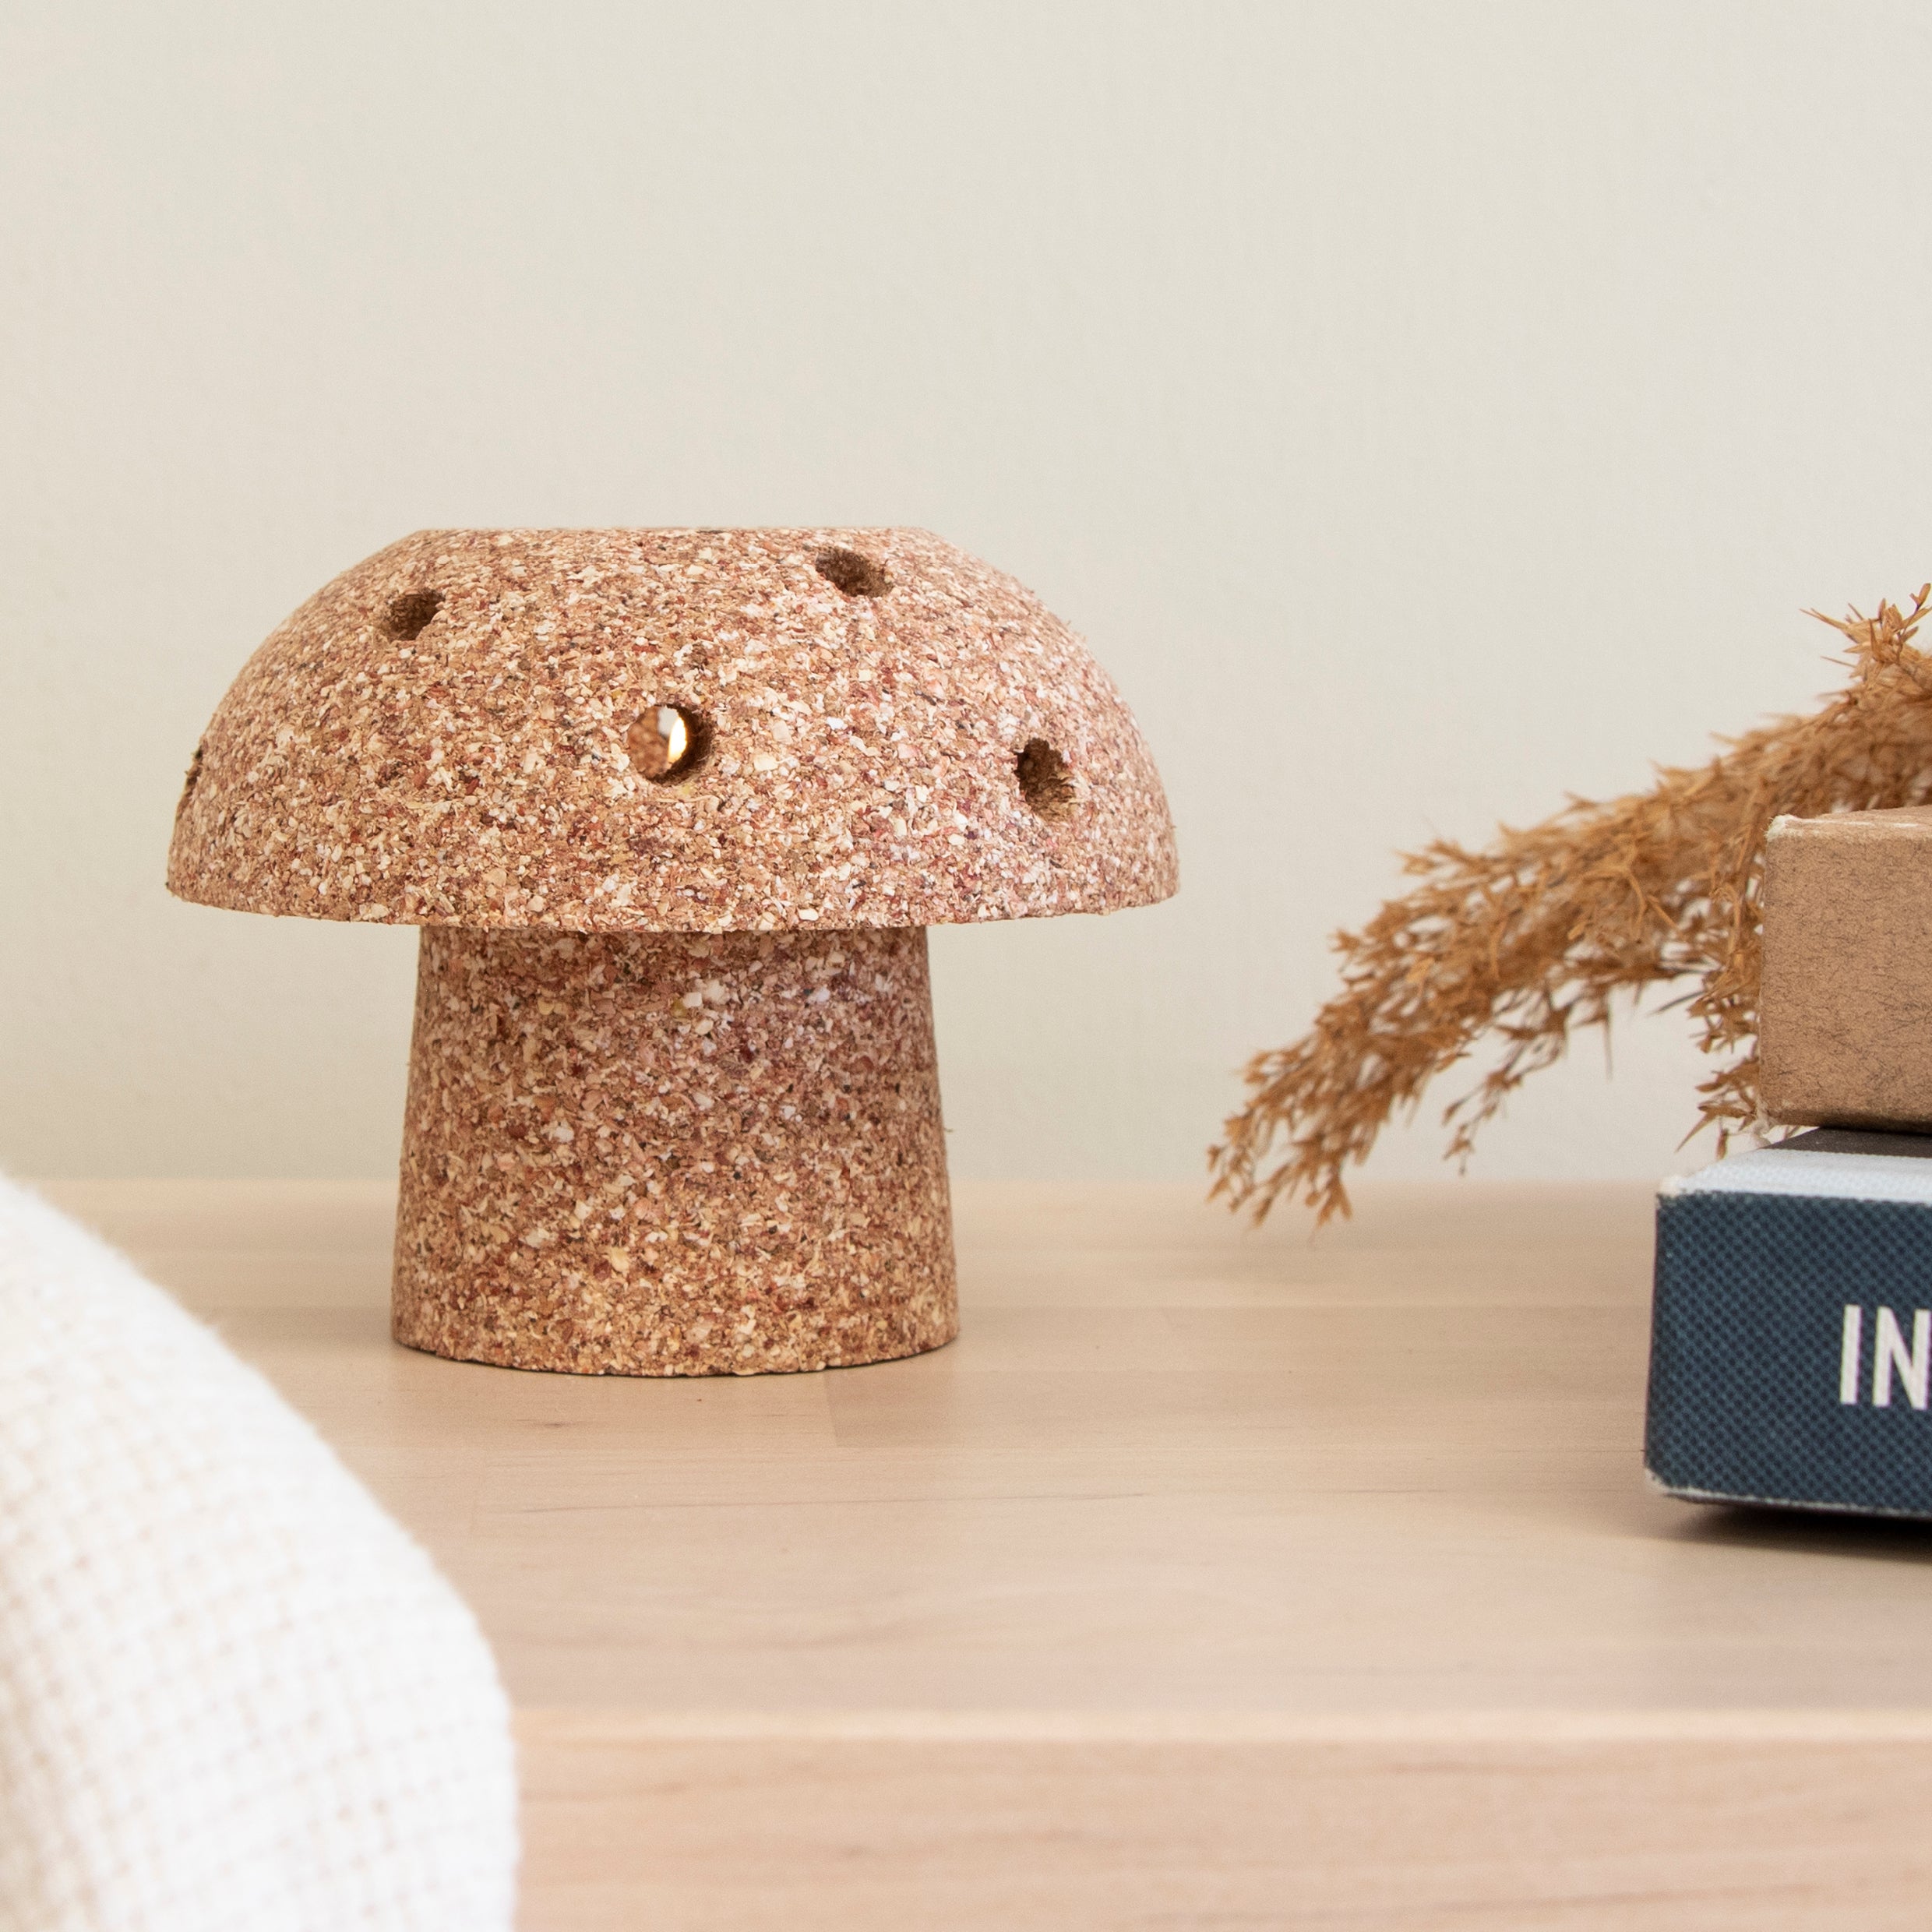 mushroom shaped tea light holder made from sweetcorn husks